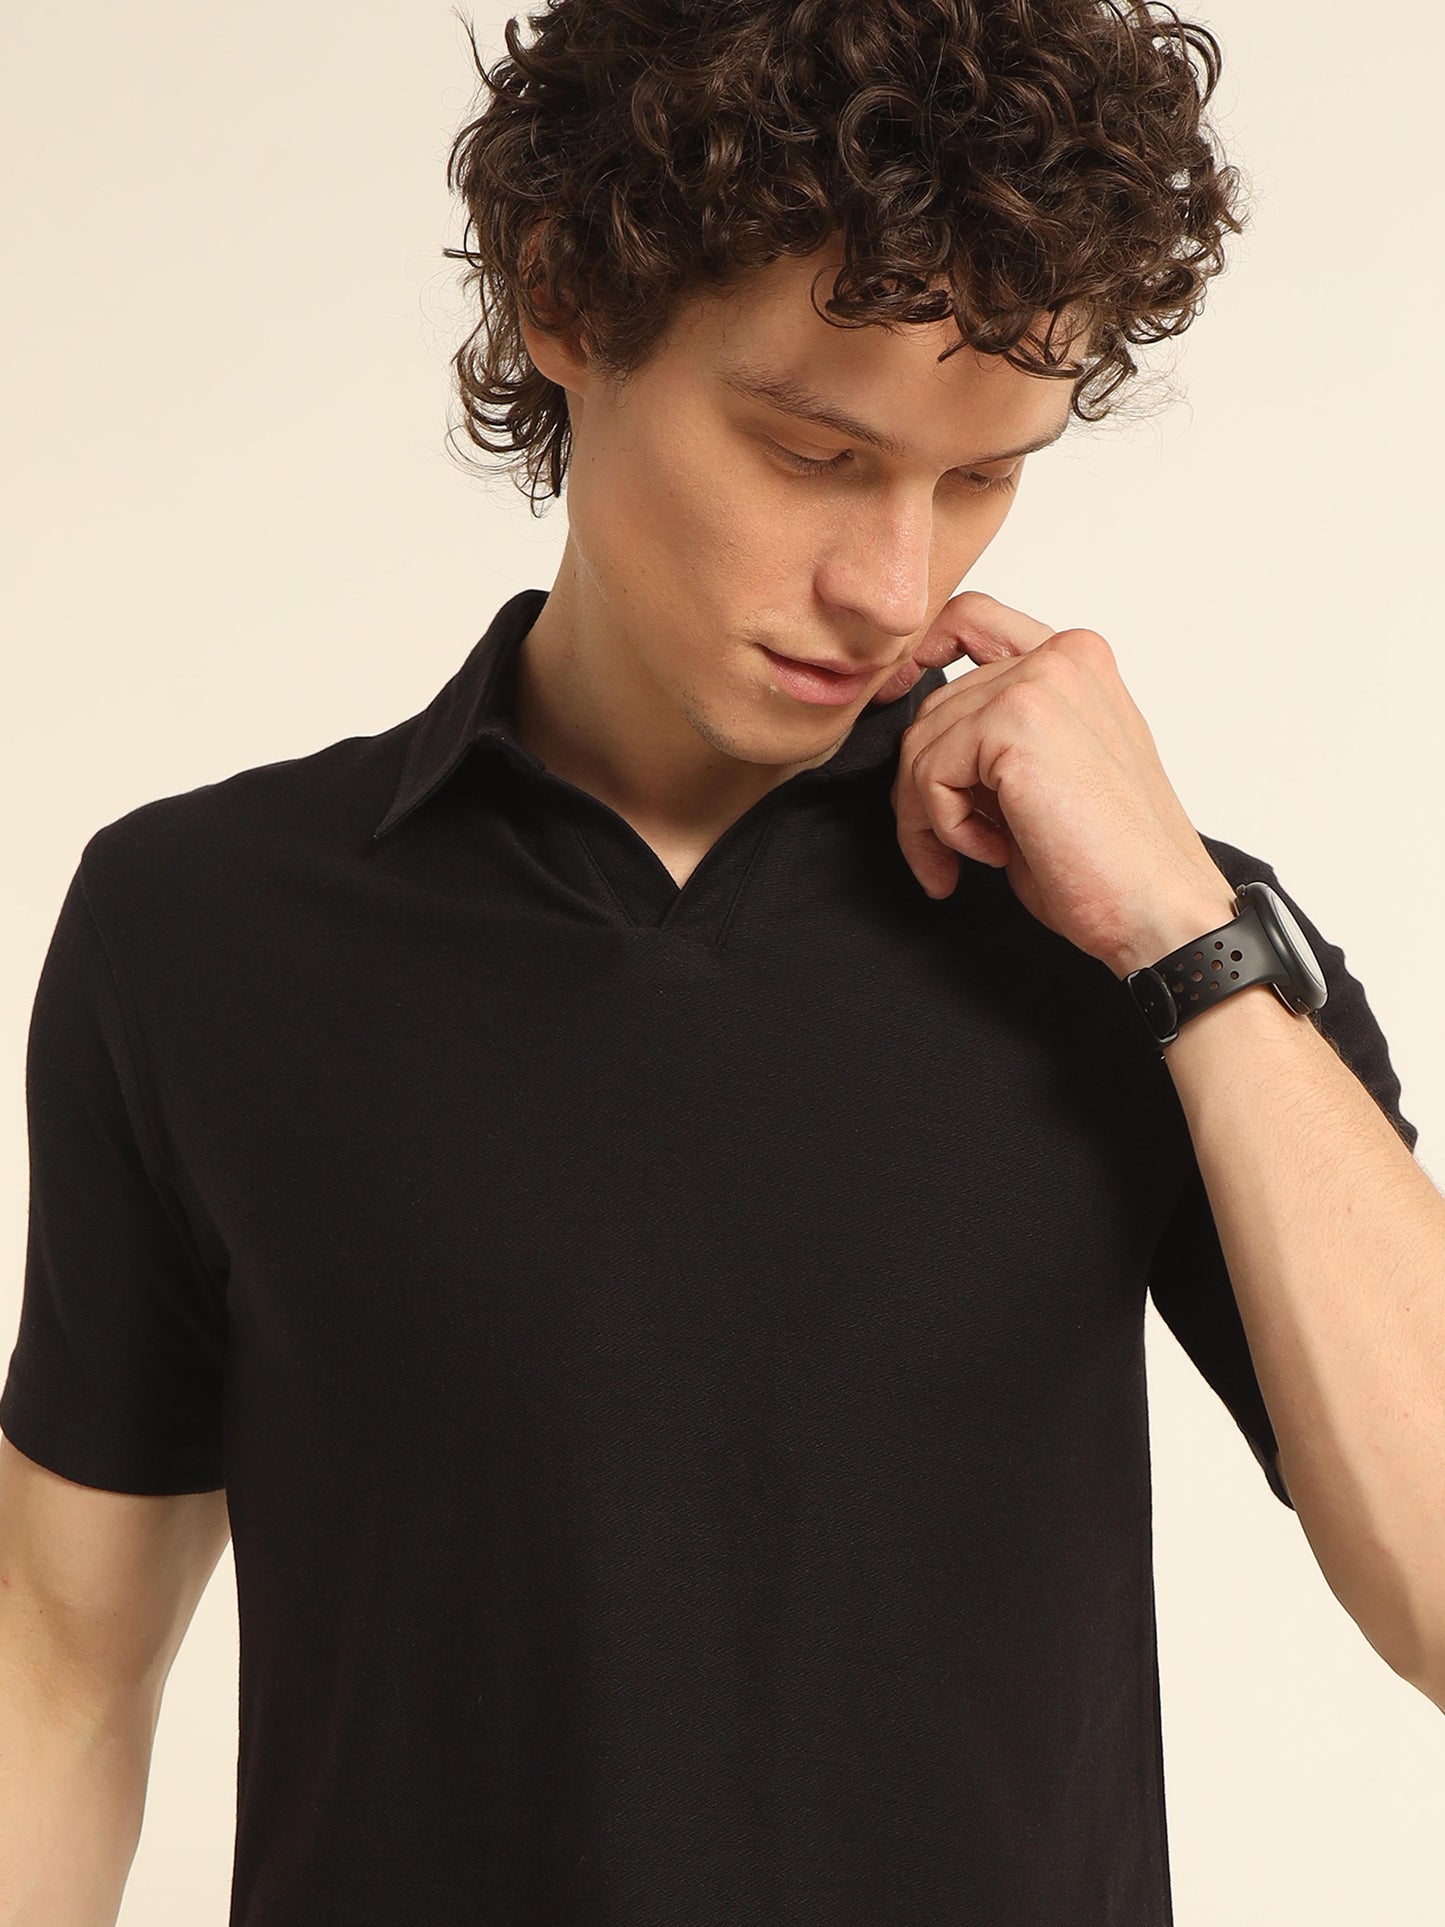 Black Polo T Shirt For Men